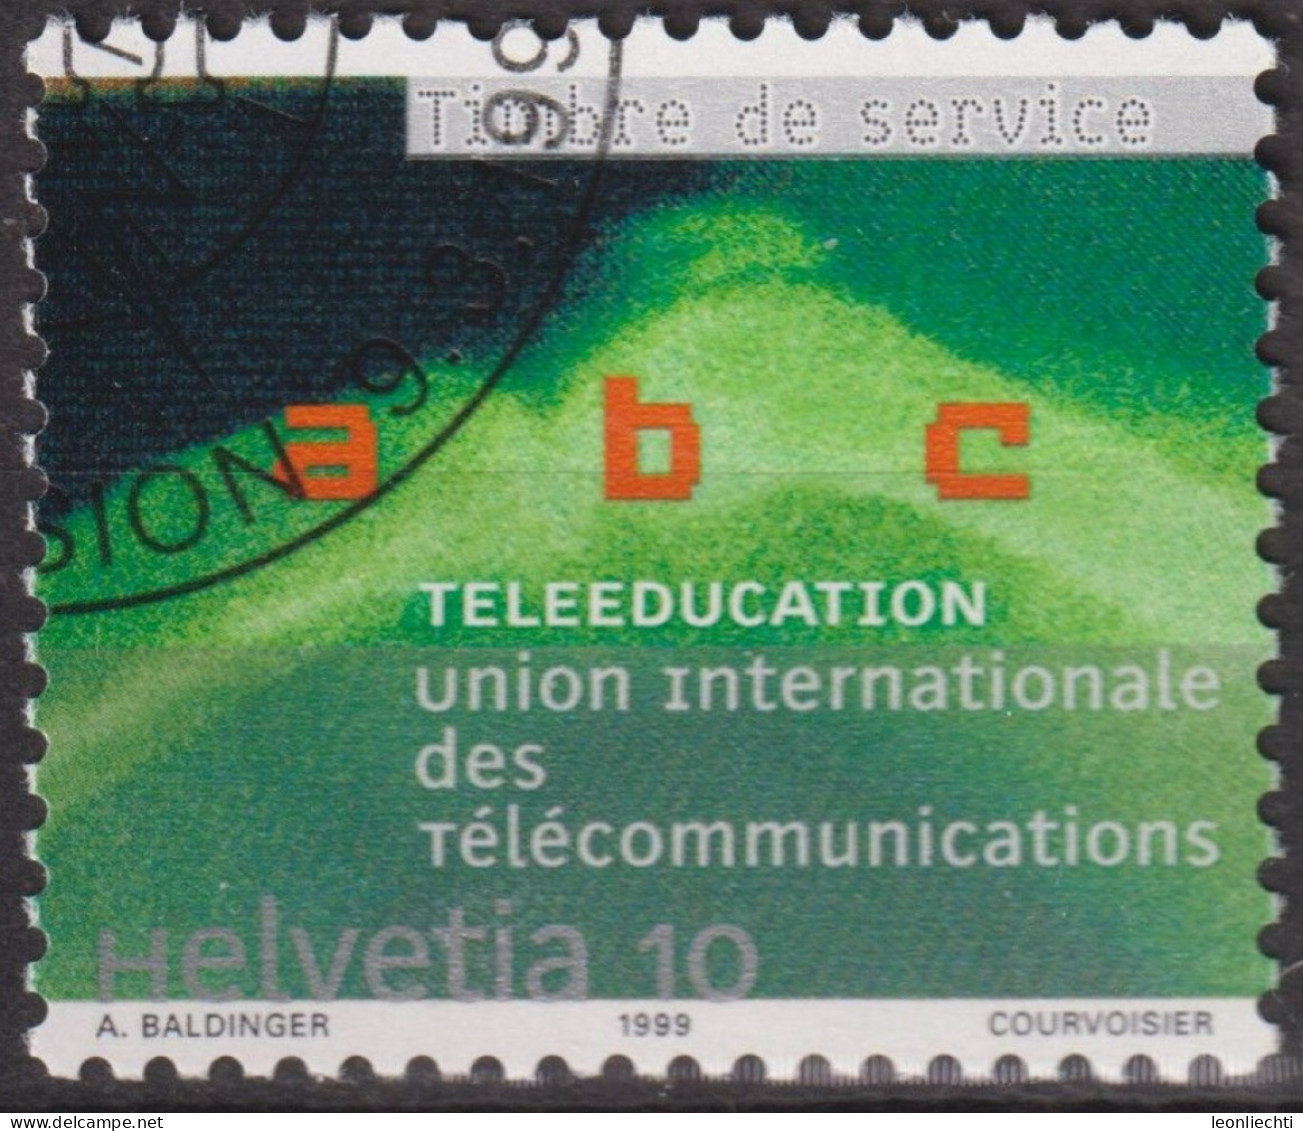 1999 CH / Dienstmarke UIT ° Mi:CH-UIT 16, Yt:CH S472, Zum:CH-UIT 16, Telelernen - Officials